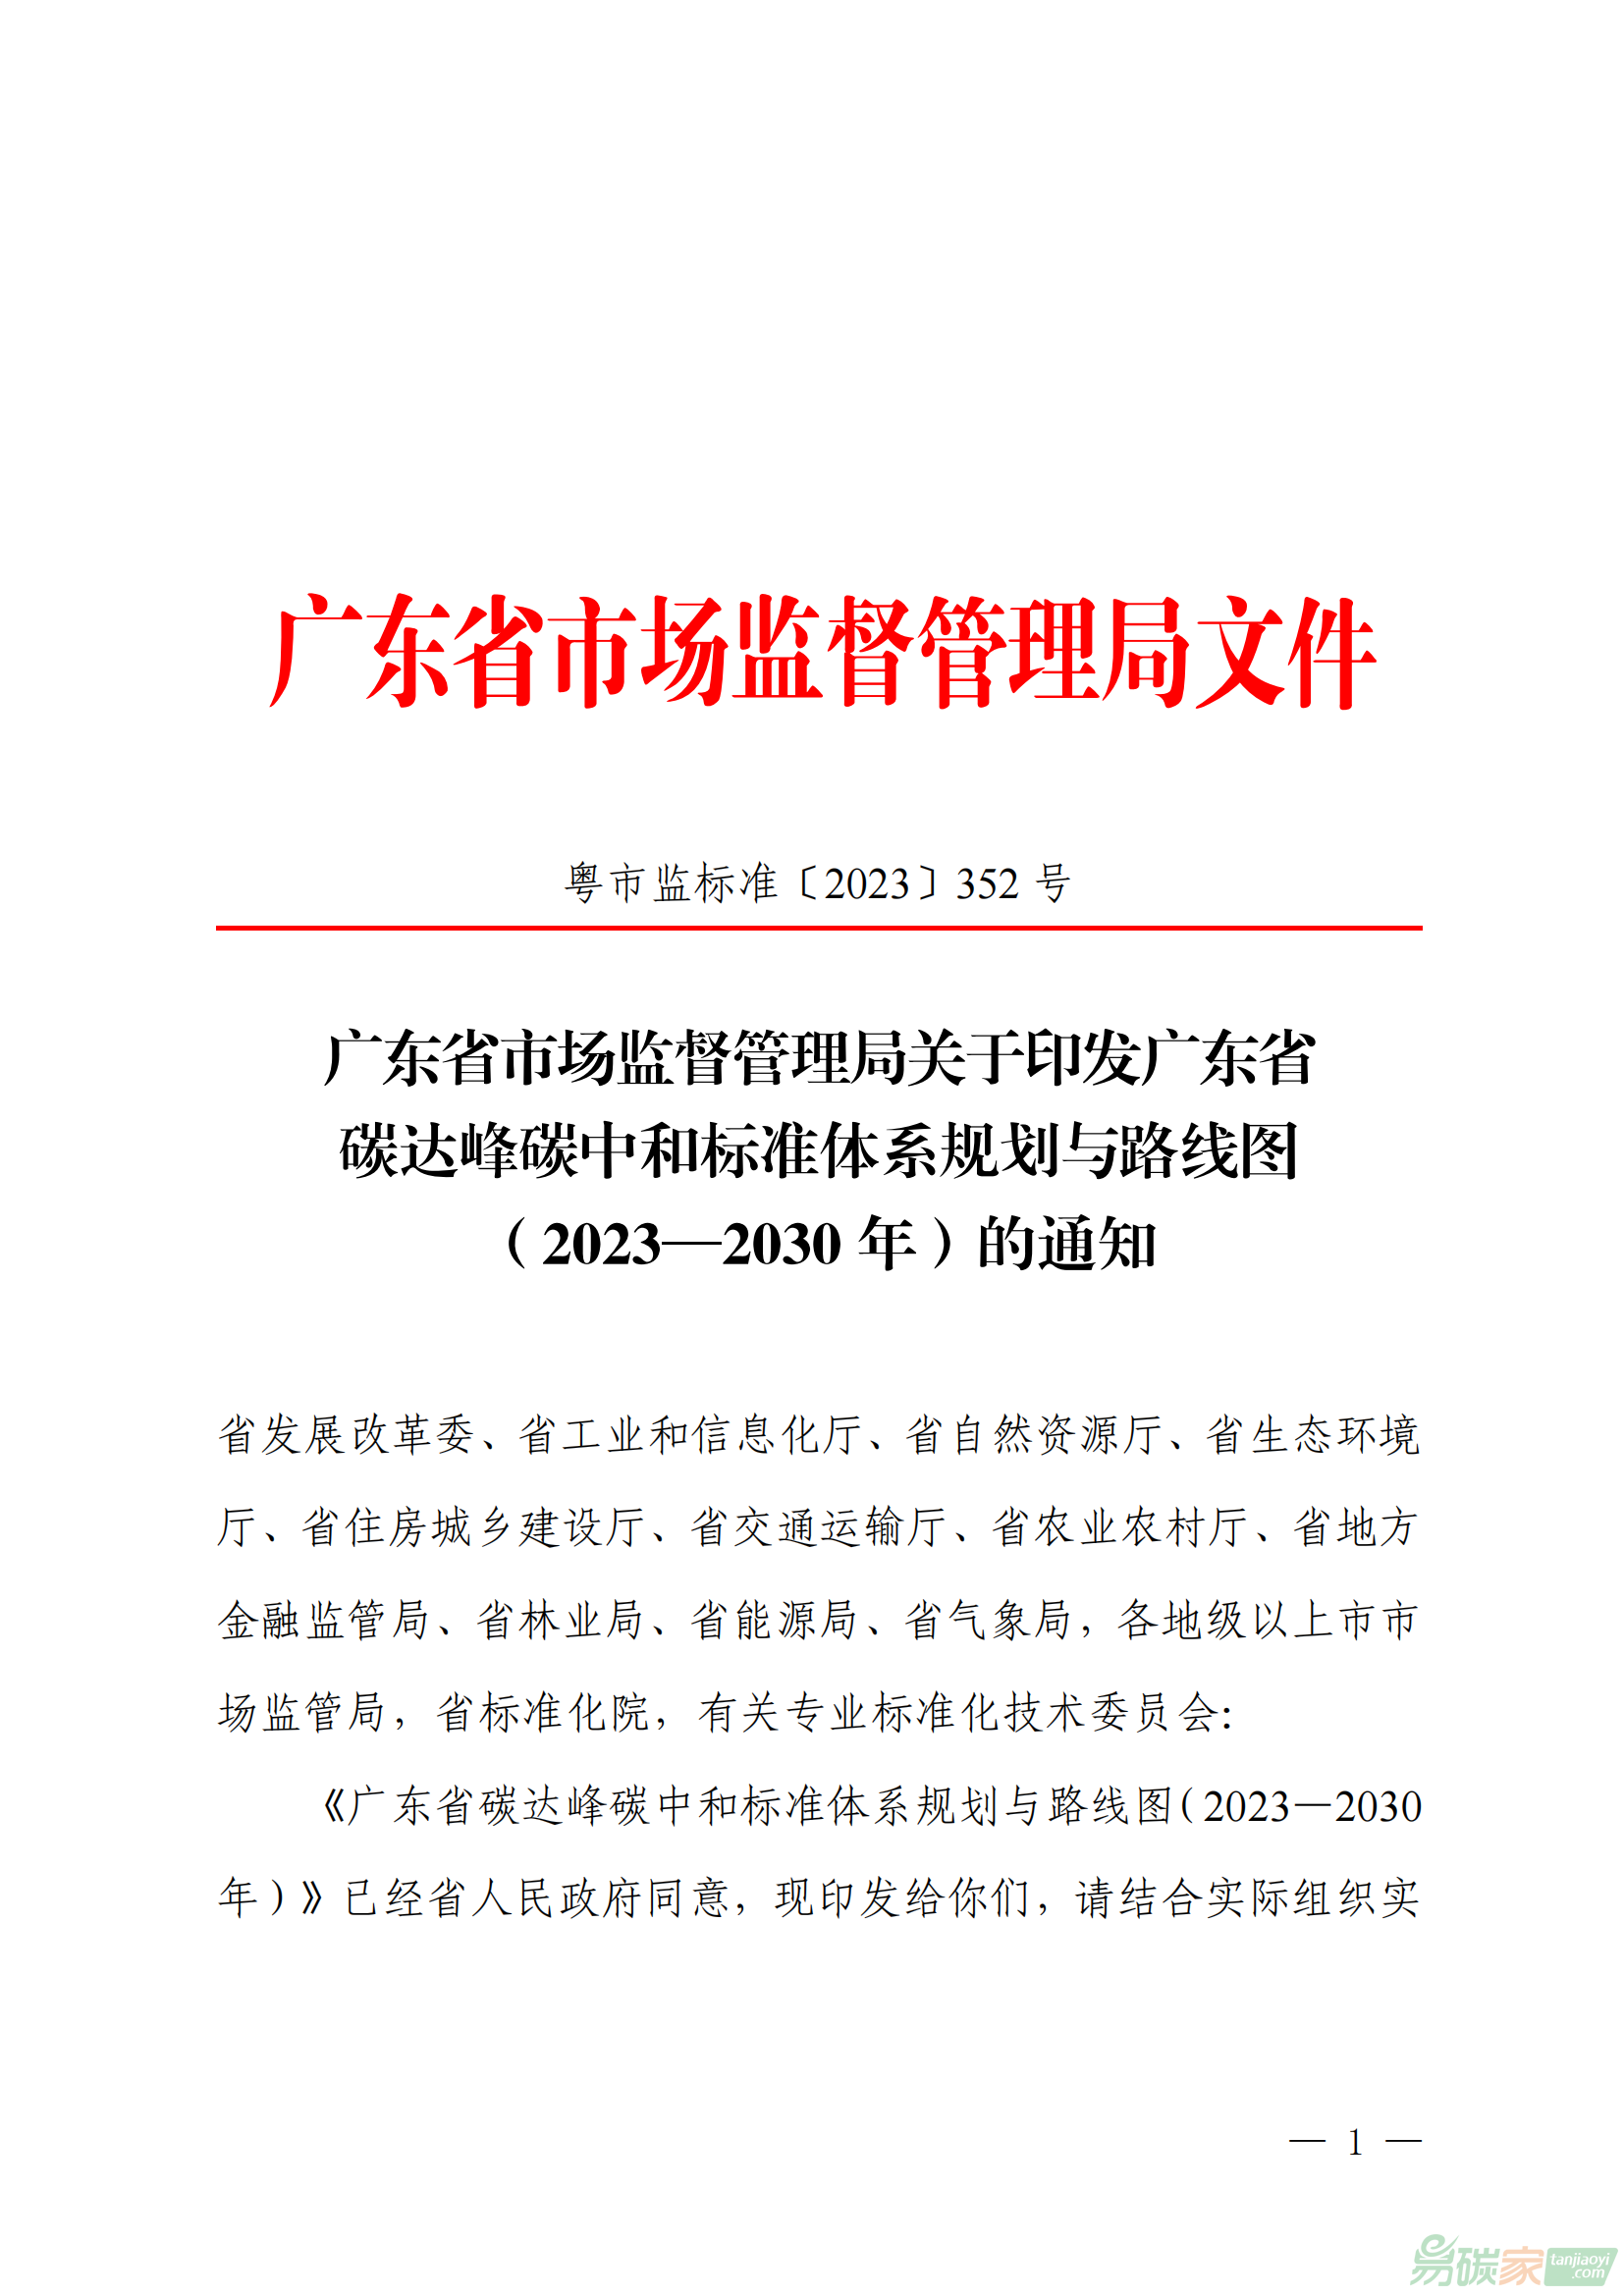 廣東省市場監督管理局關于印發廣東省碳達峰碳中和標準體系規劃與路線圖（2023-2030年）的通知